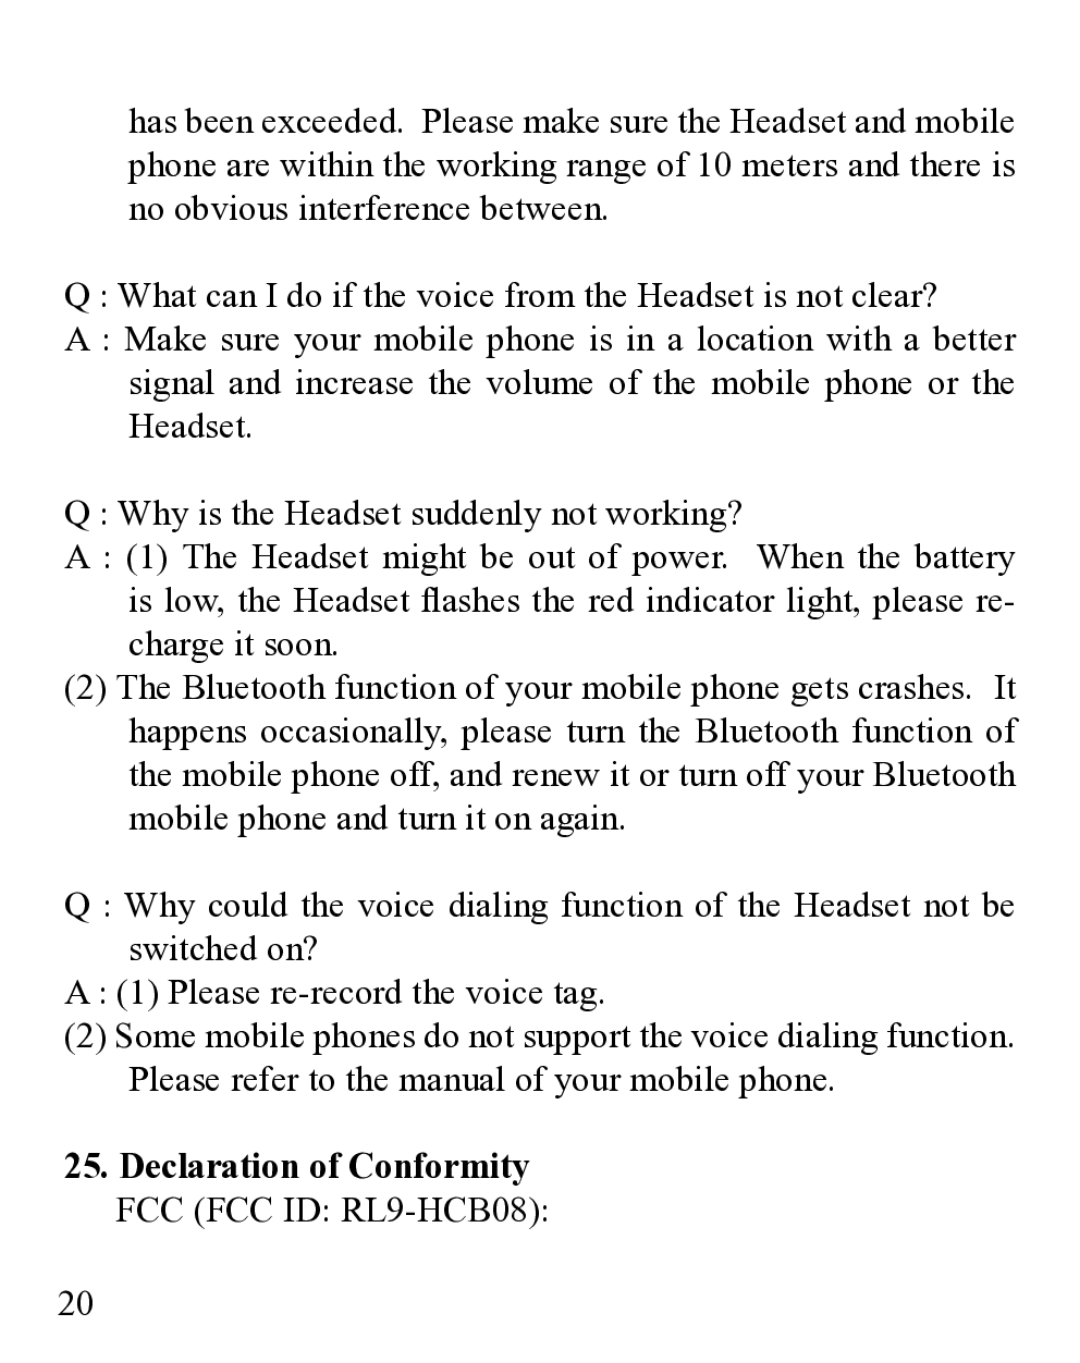 Huey Chiao HCB19 manual Declaration of Conformity FCC FCC ID RL9-HCB08 